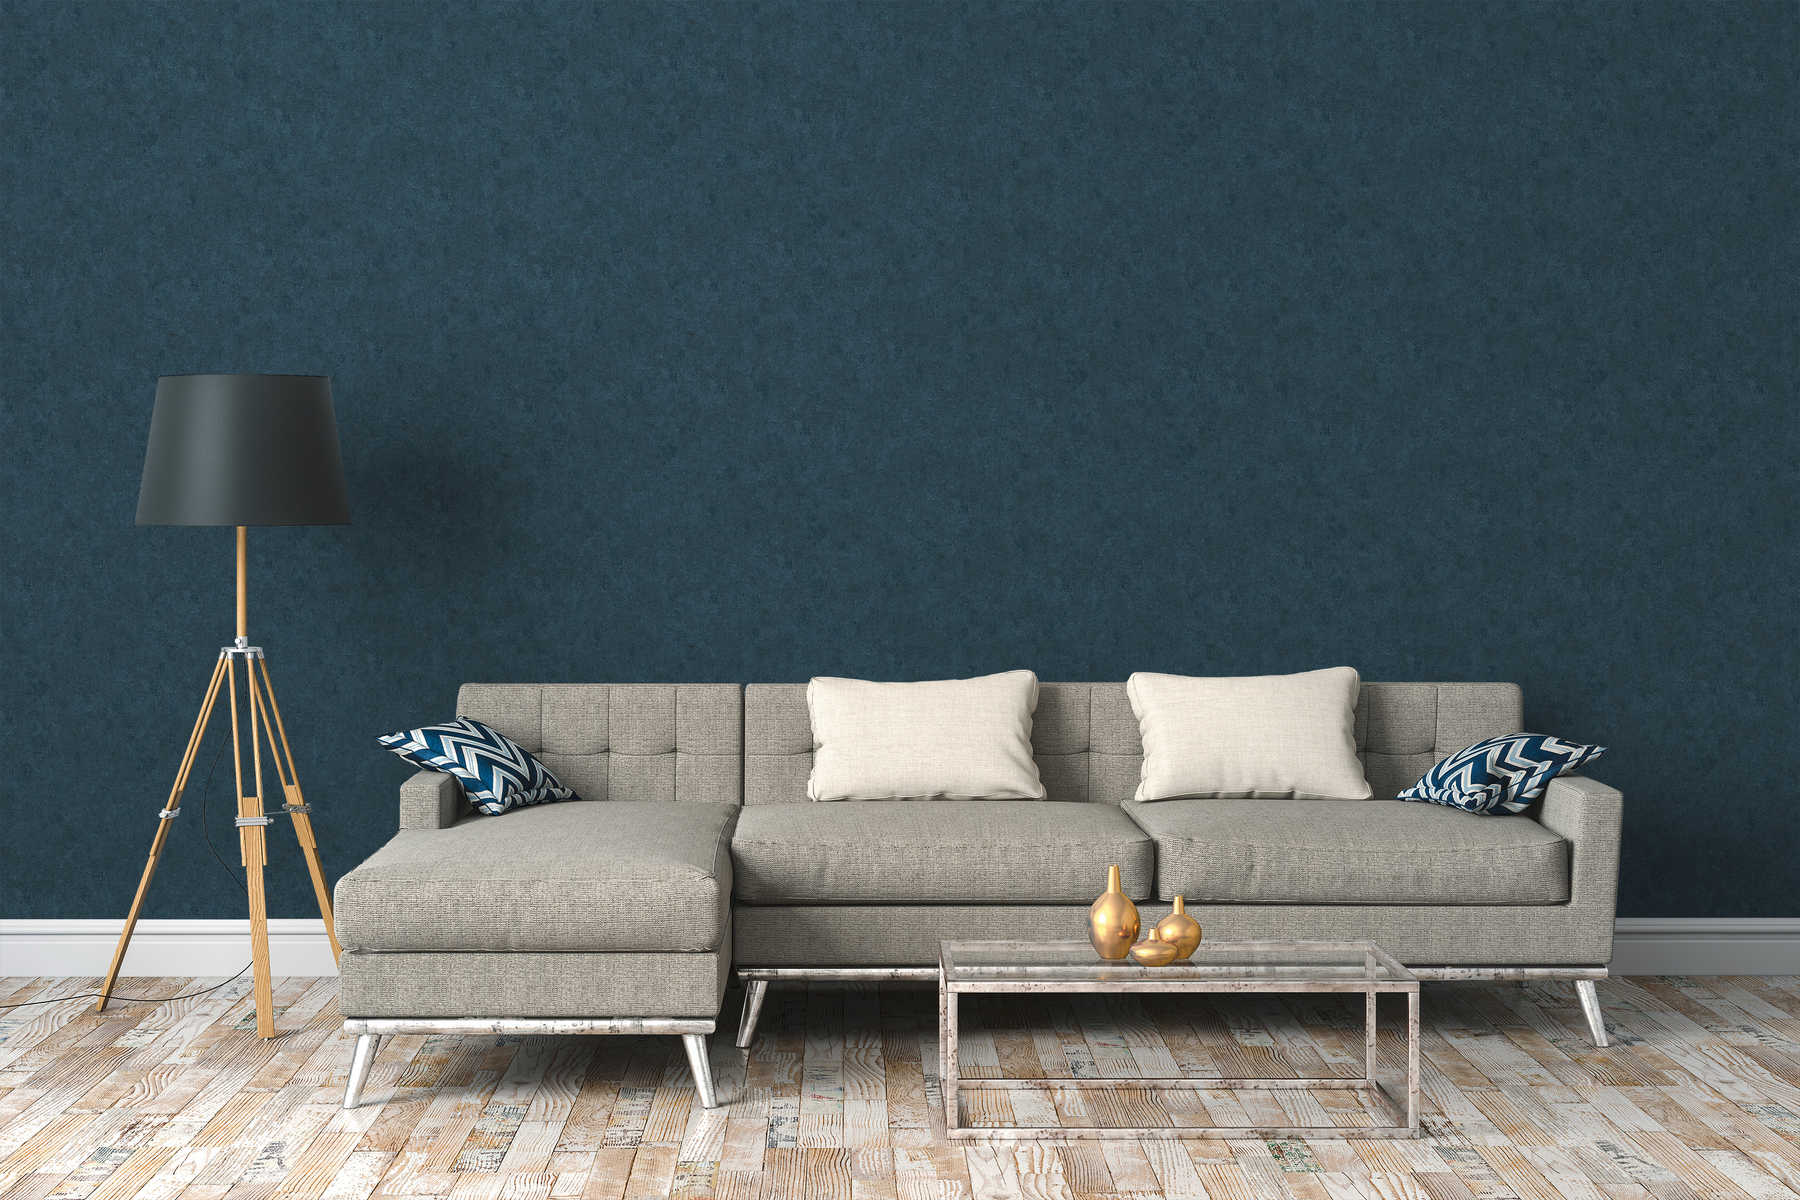             Behang met subtiel kleurenpatroon in used look - blauw
        